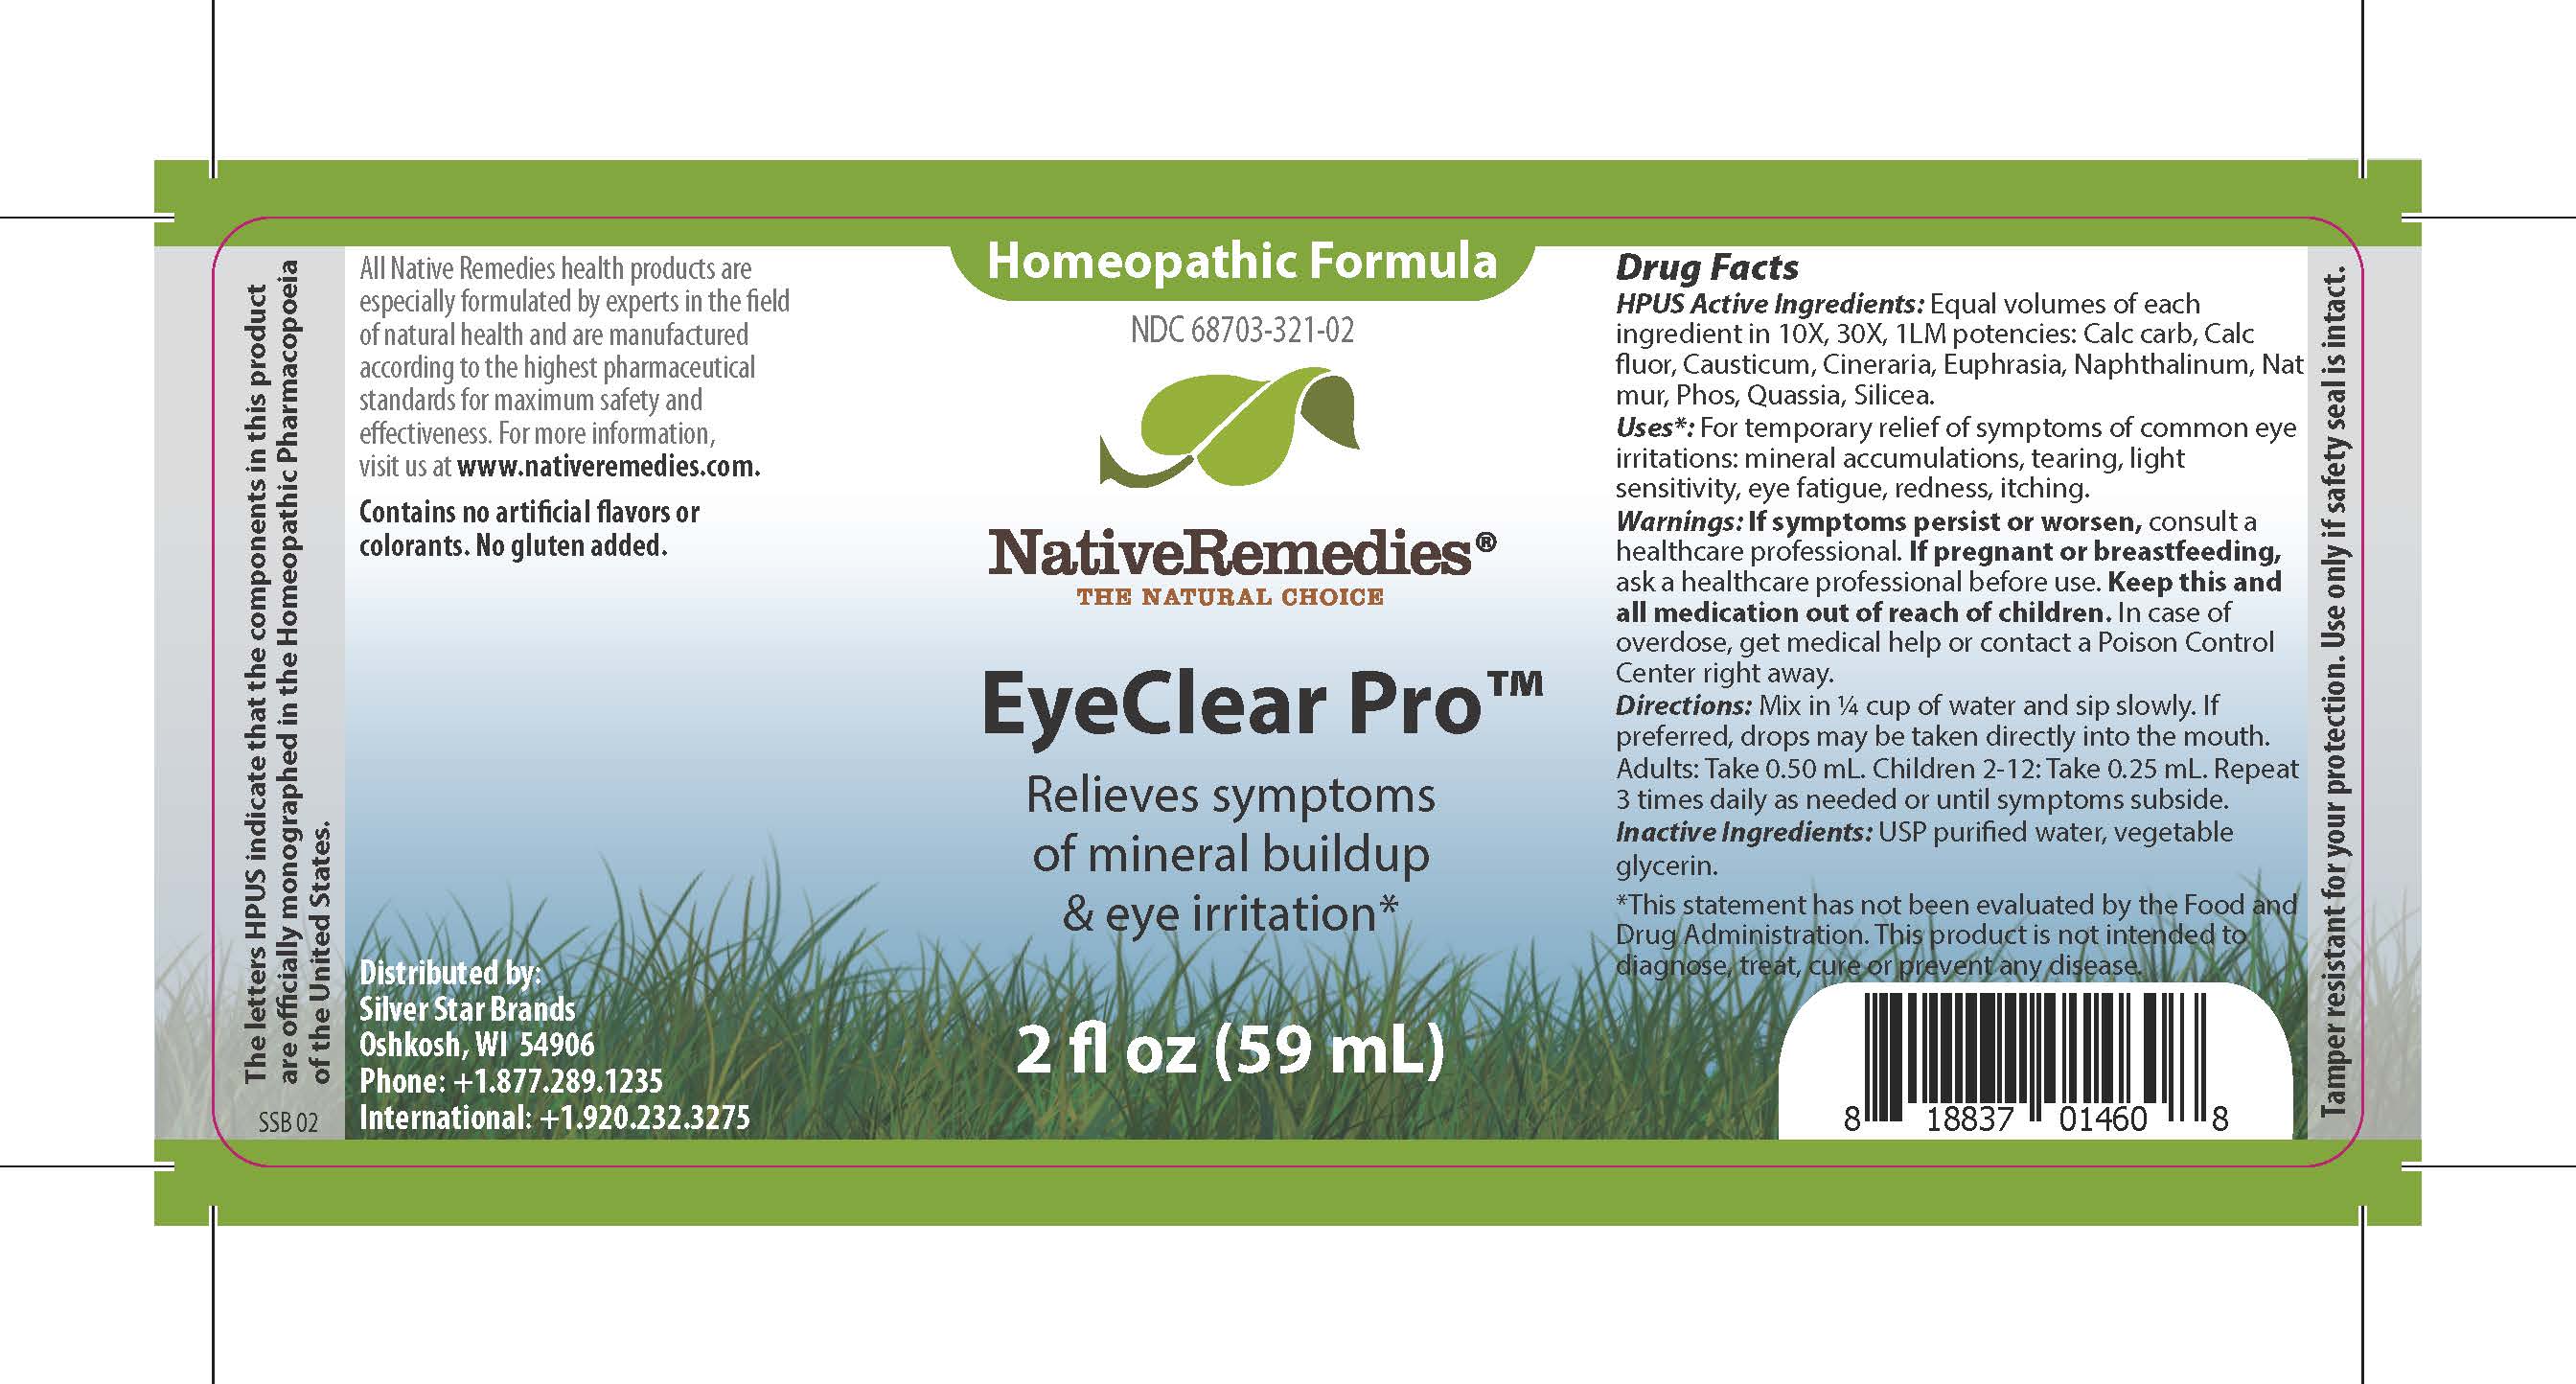 EyeClear Pro